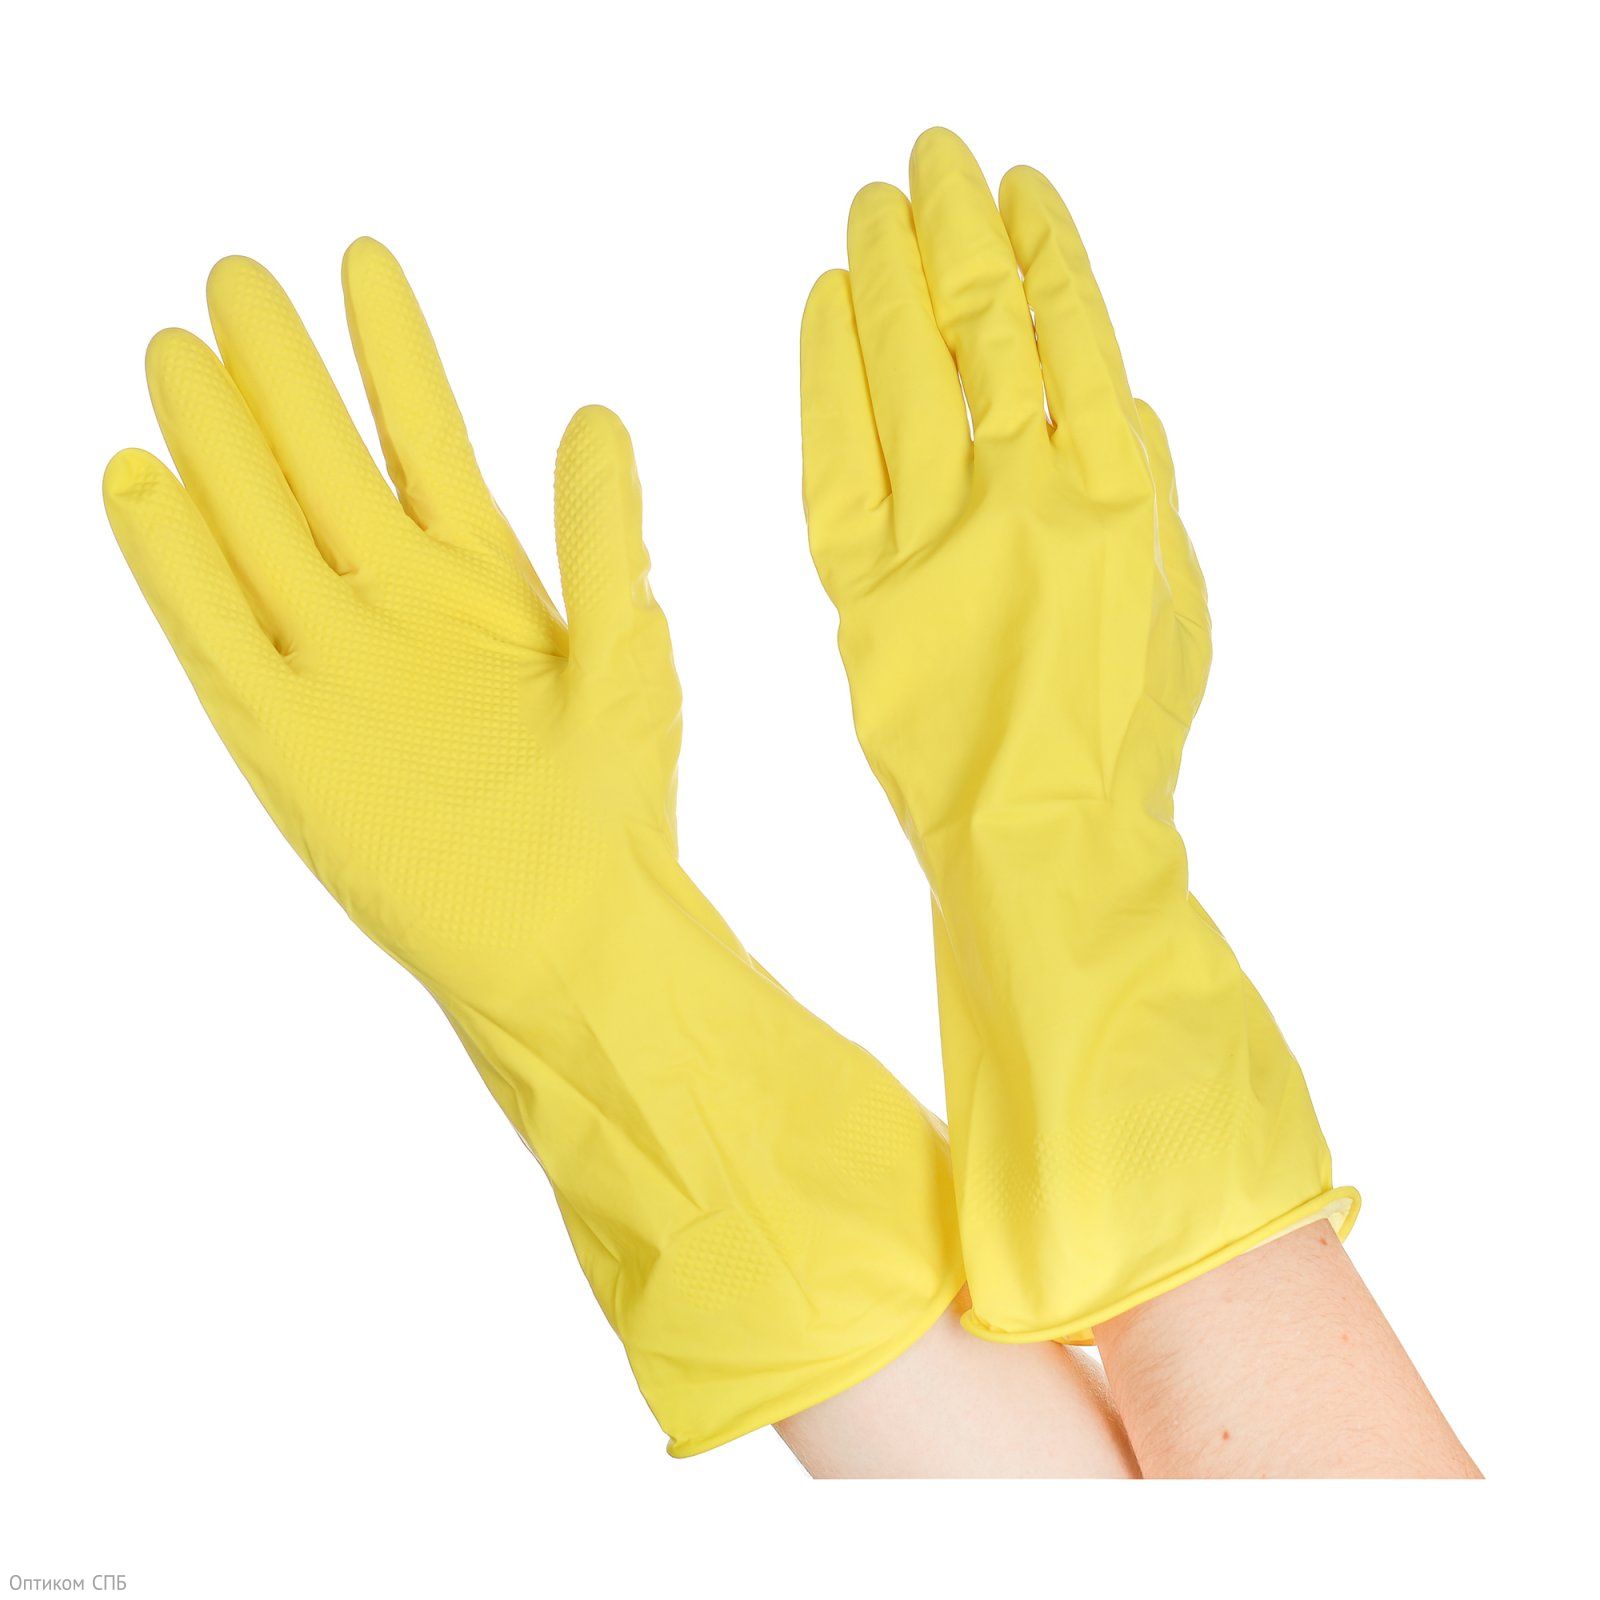 Перчатки резиновые хозяйственные Optiline (Оптилайн), с валиком. Предназначены для бытового использования во время уборки, стирки, мытья автомобиля, садовых работ. Размер S. Цвет желтый.